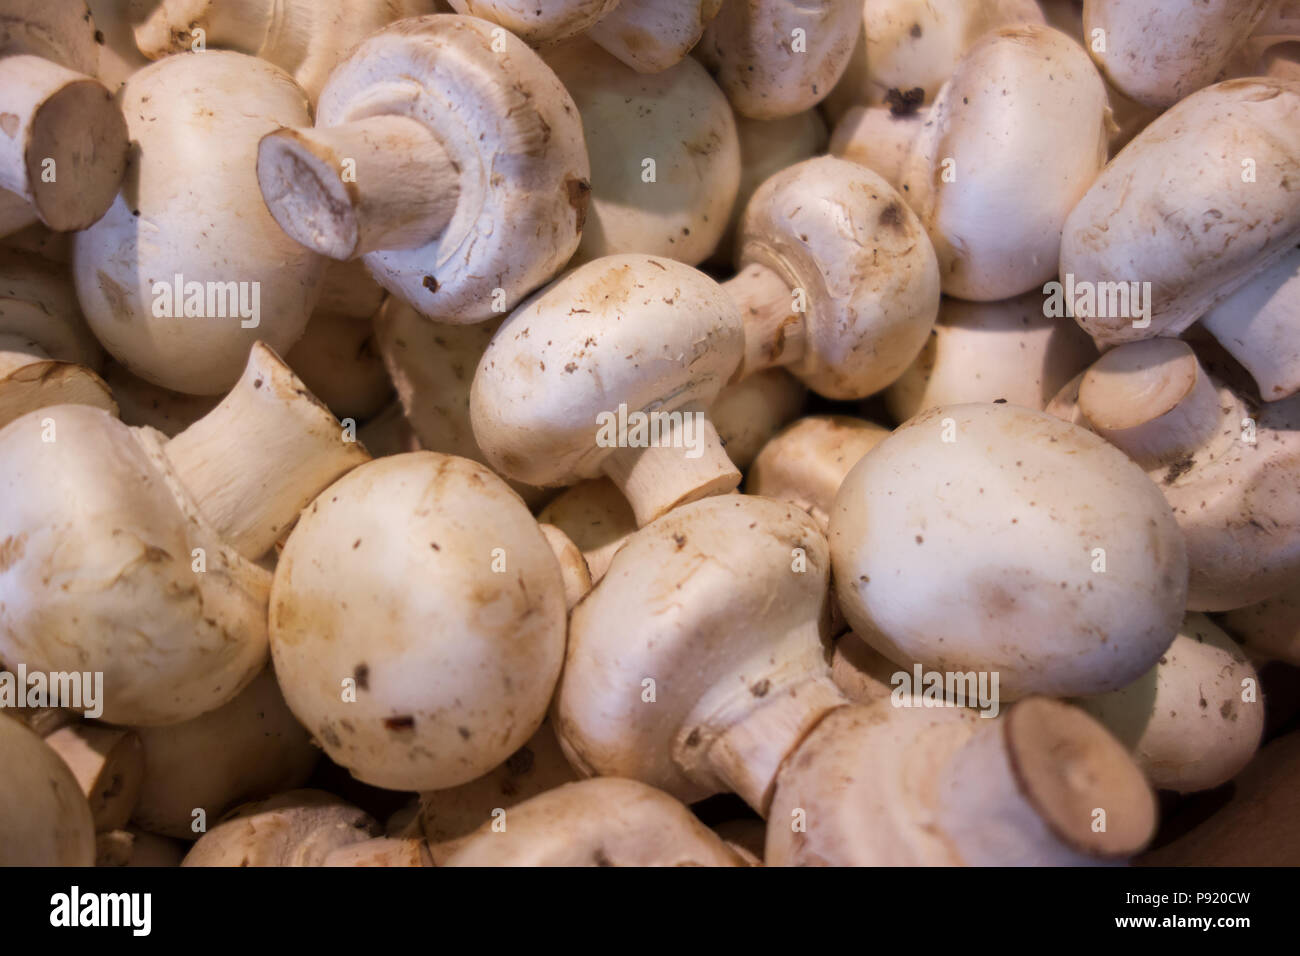 Fresh white mushroom close up background Stock Photo